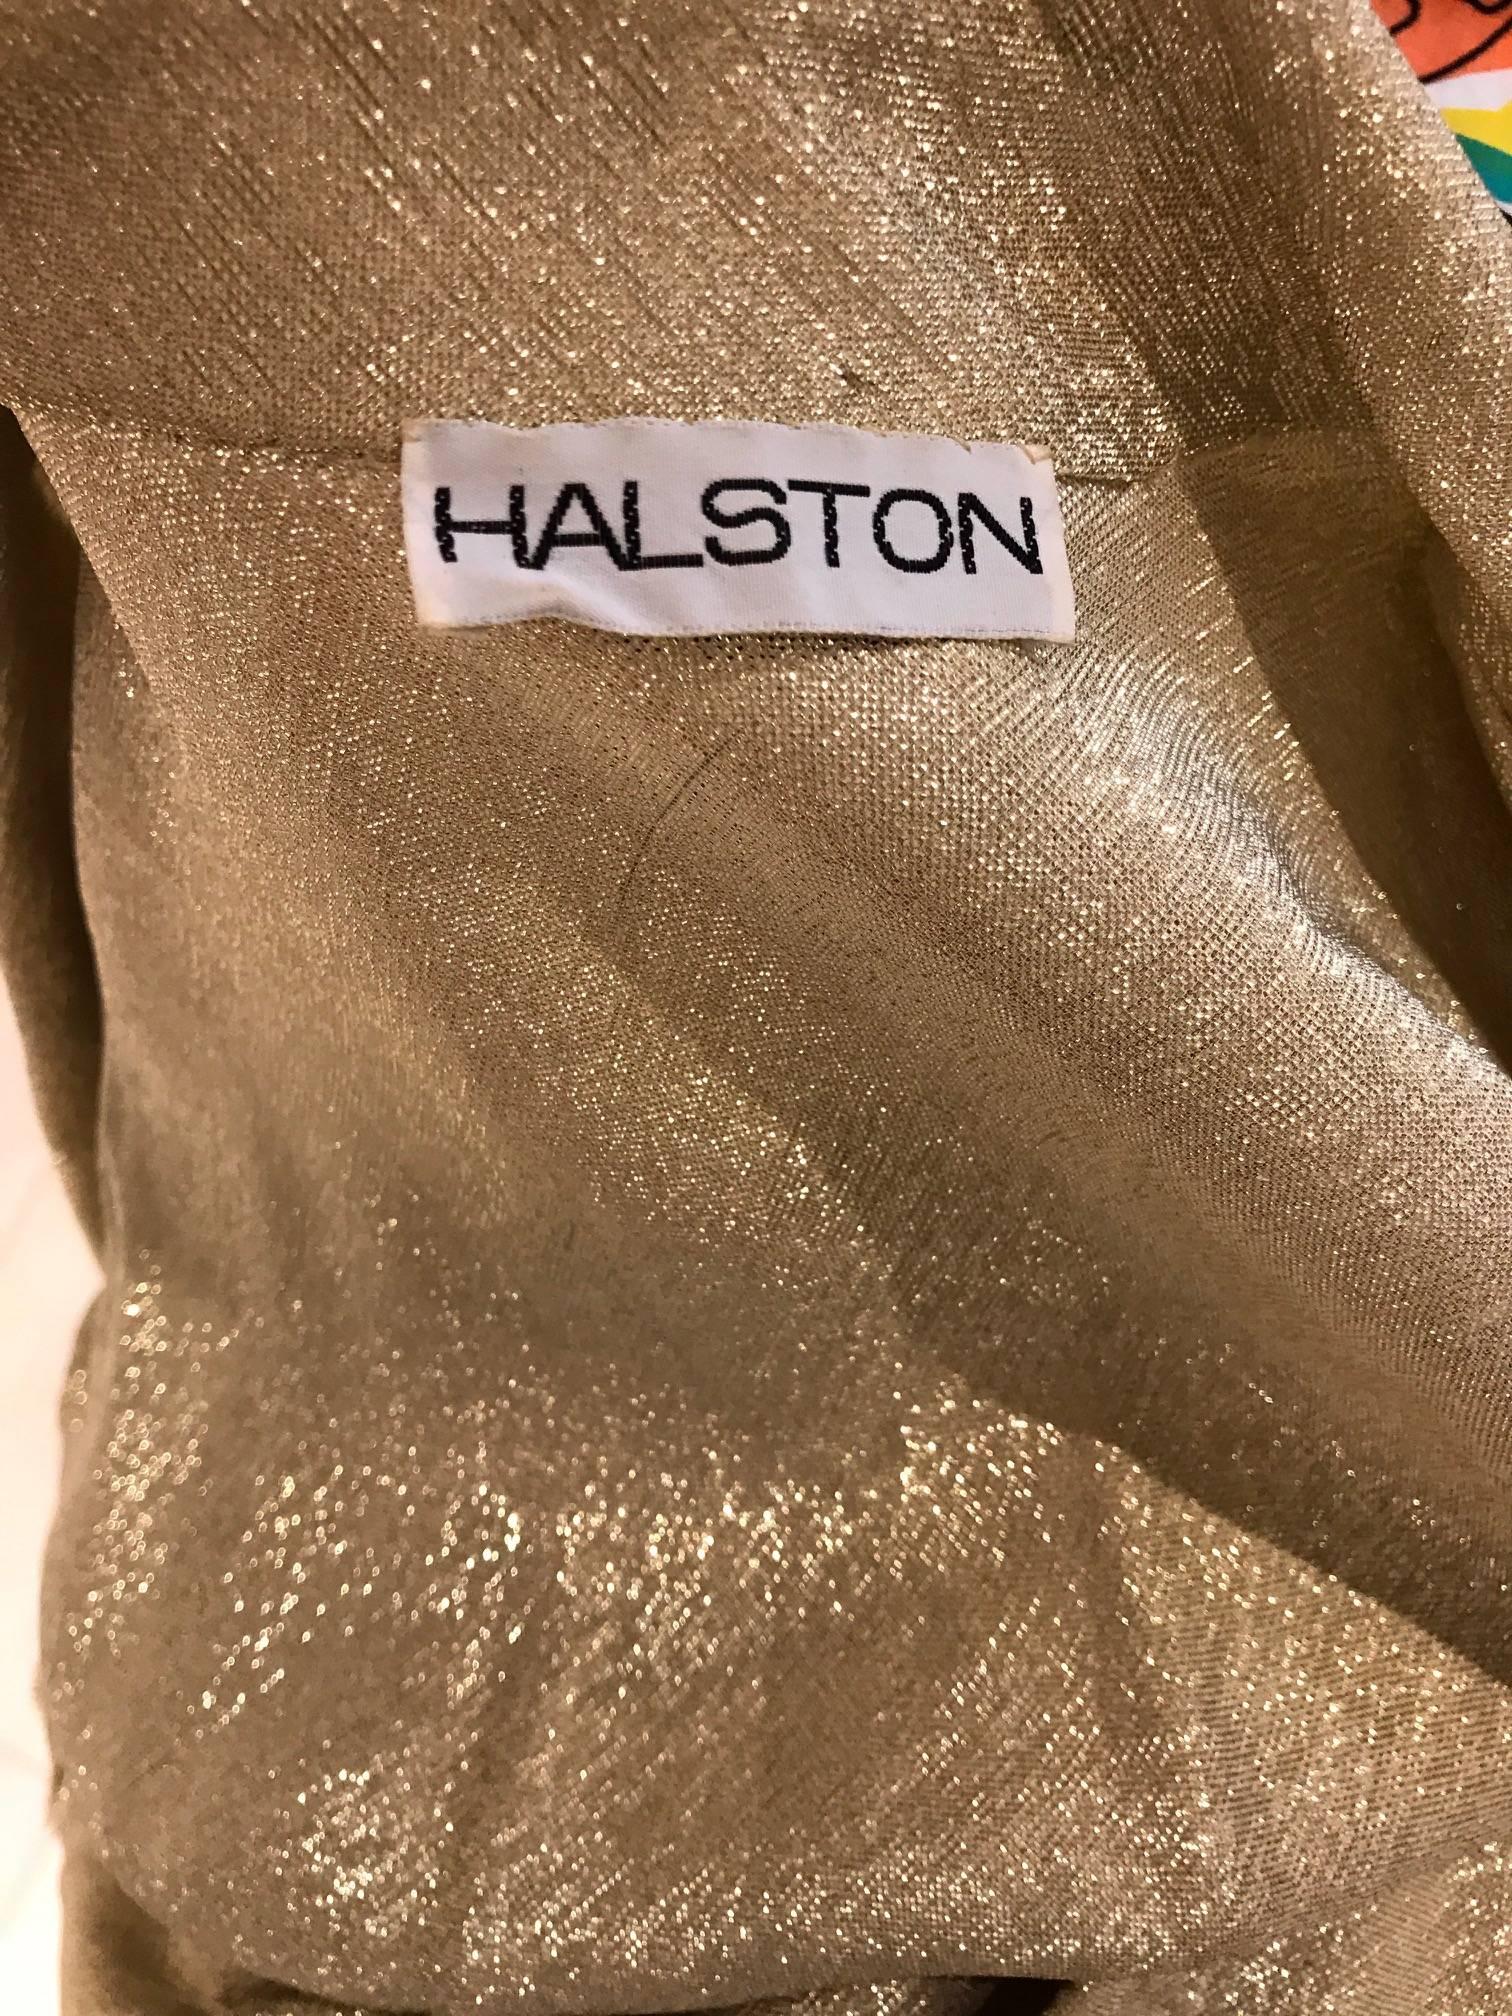 halston wraps